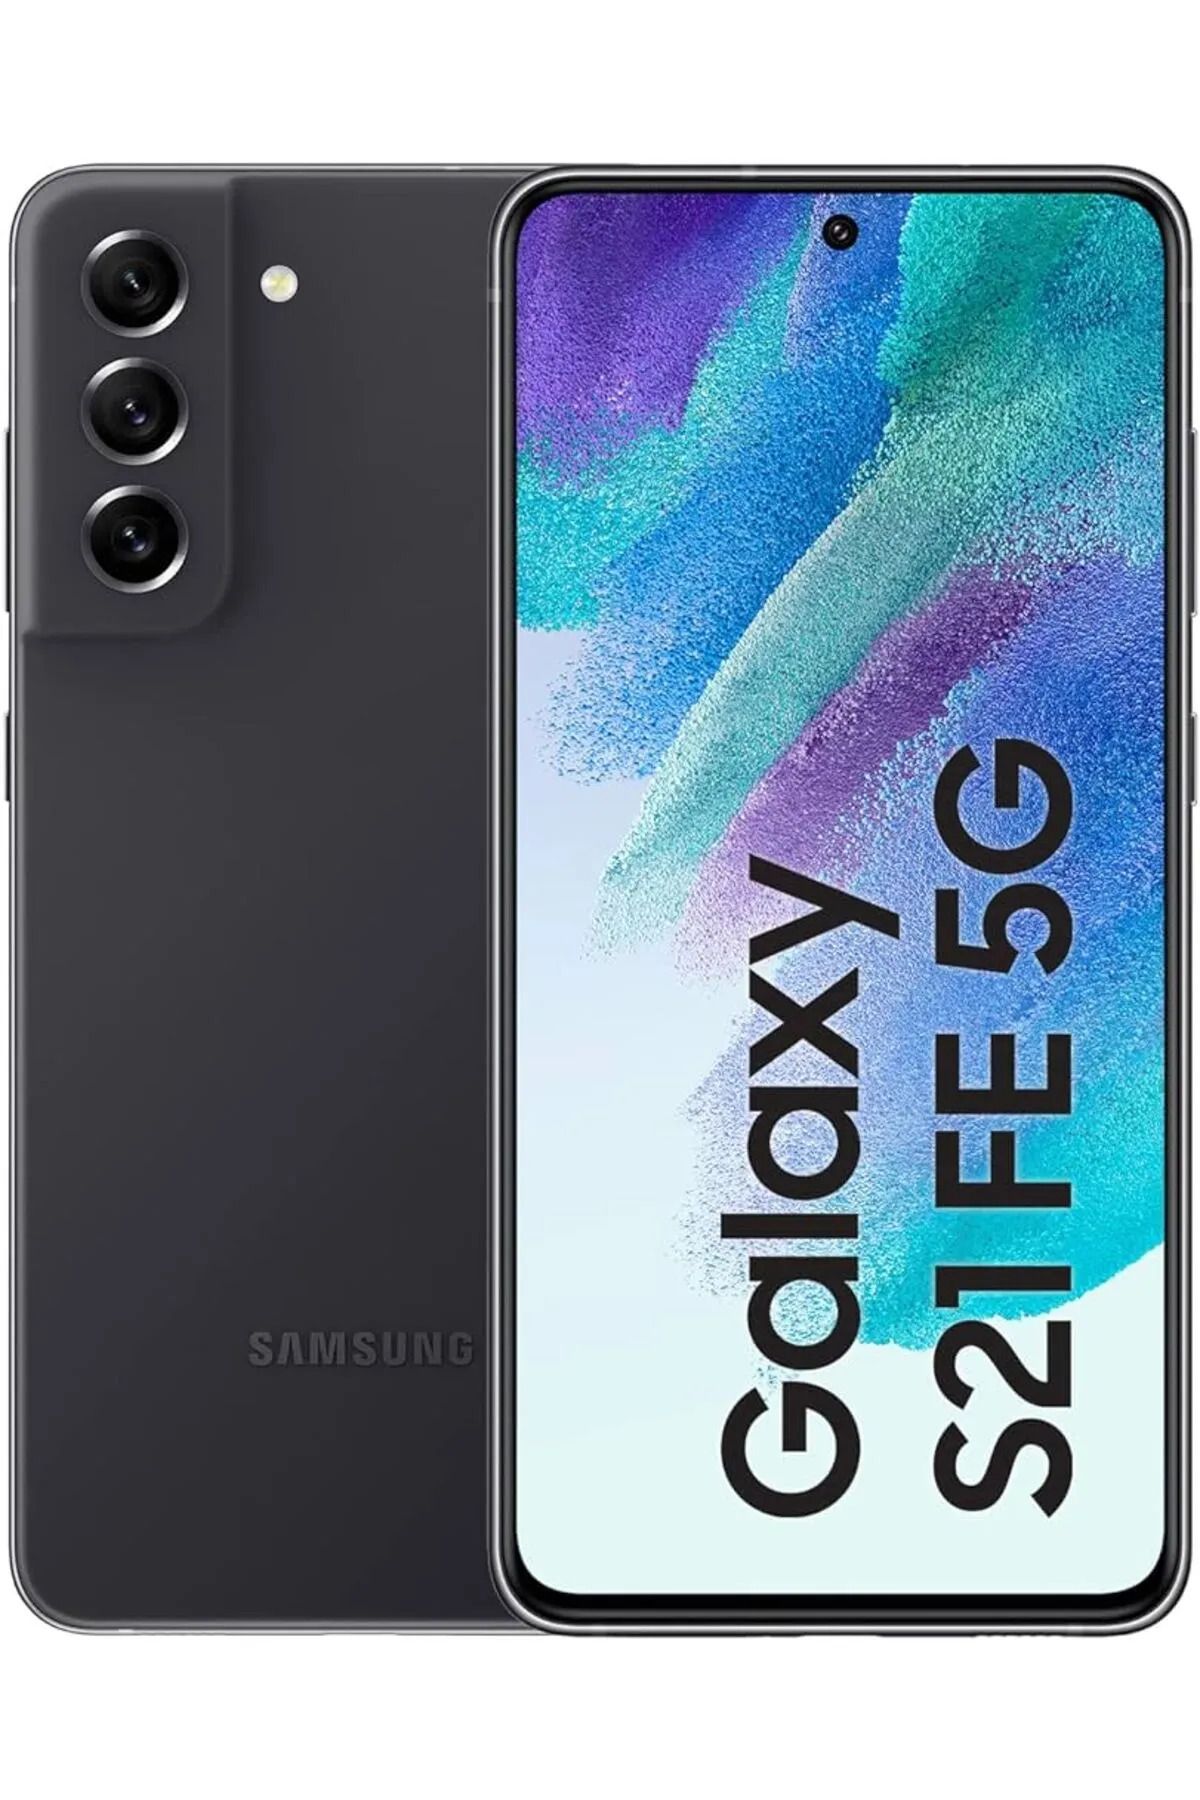 Samsung Yenilenmiş Samsung Galaxy S21 FE 128 GB 5G Siyah Cep Telefonu (B Kalite - 1 Yıl Garantili)